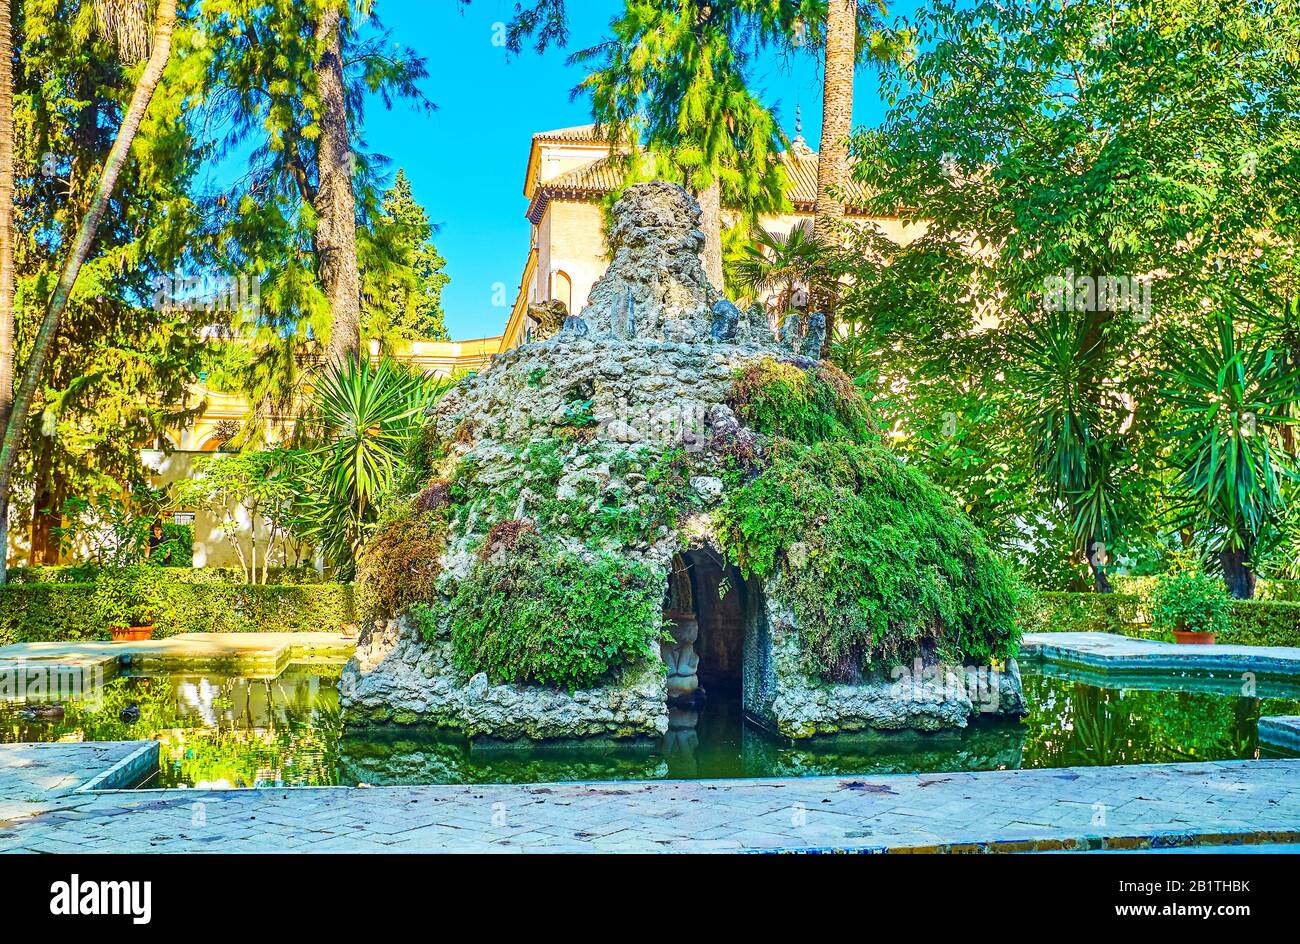 Séville, ESPAGNE - 1 OCTOBRE 2019: La petite grotte des Sultans (Gruta de las Sultanas) avec une petite sculpture à l'intérieur, située dans un petit étang à Alcaza Banque D'Images